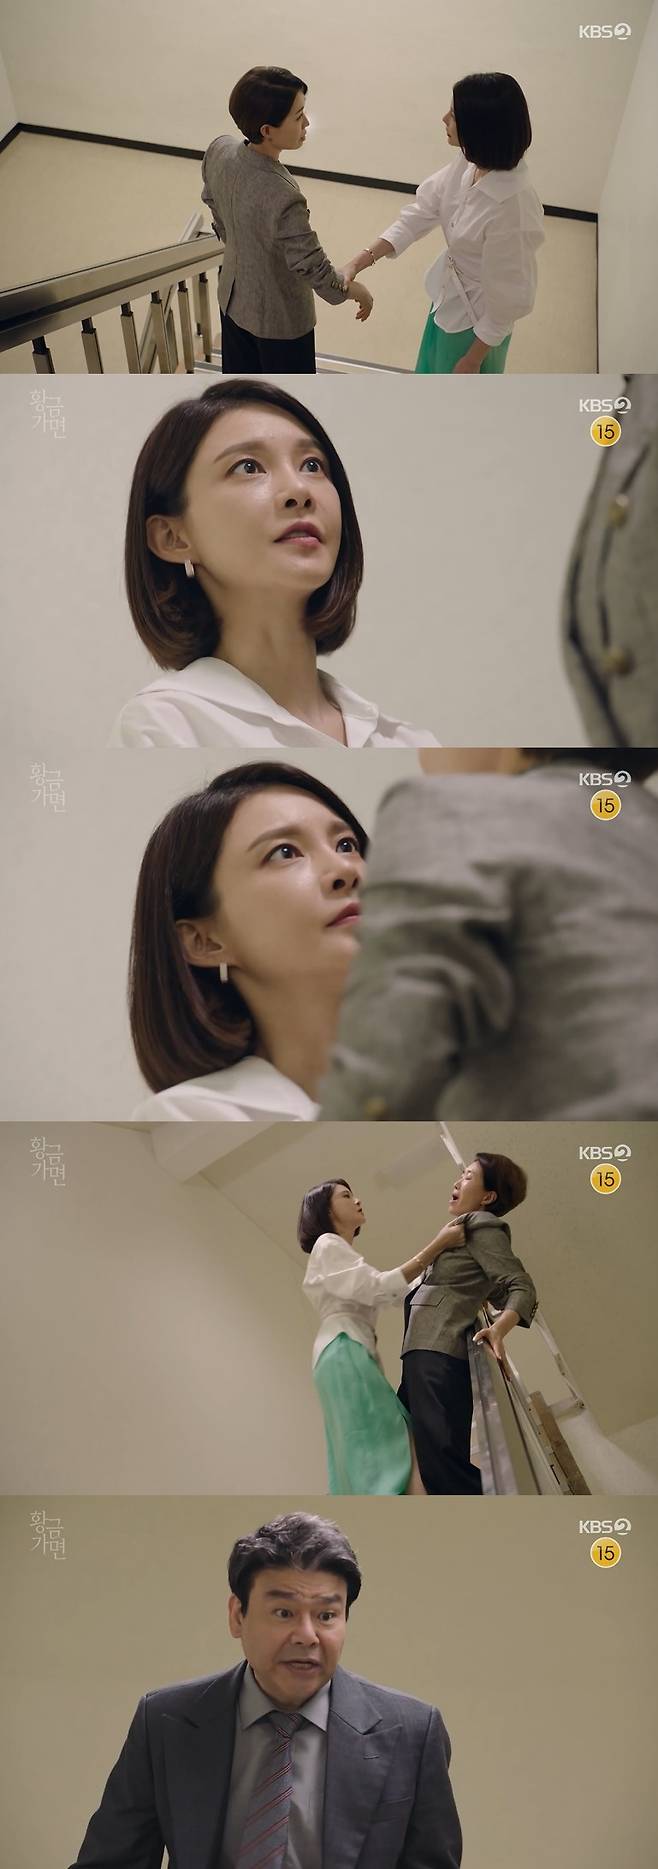 /사진=KBS 2TV 일일드라마 '황금가면' 방송화면